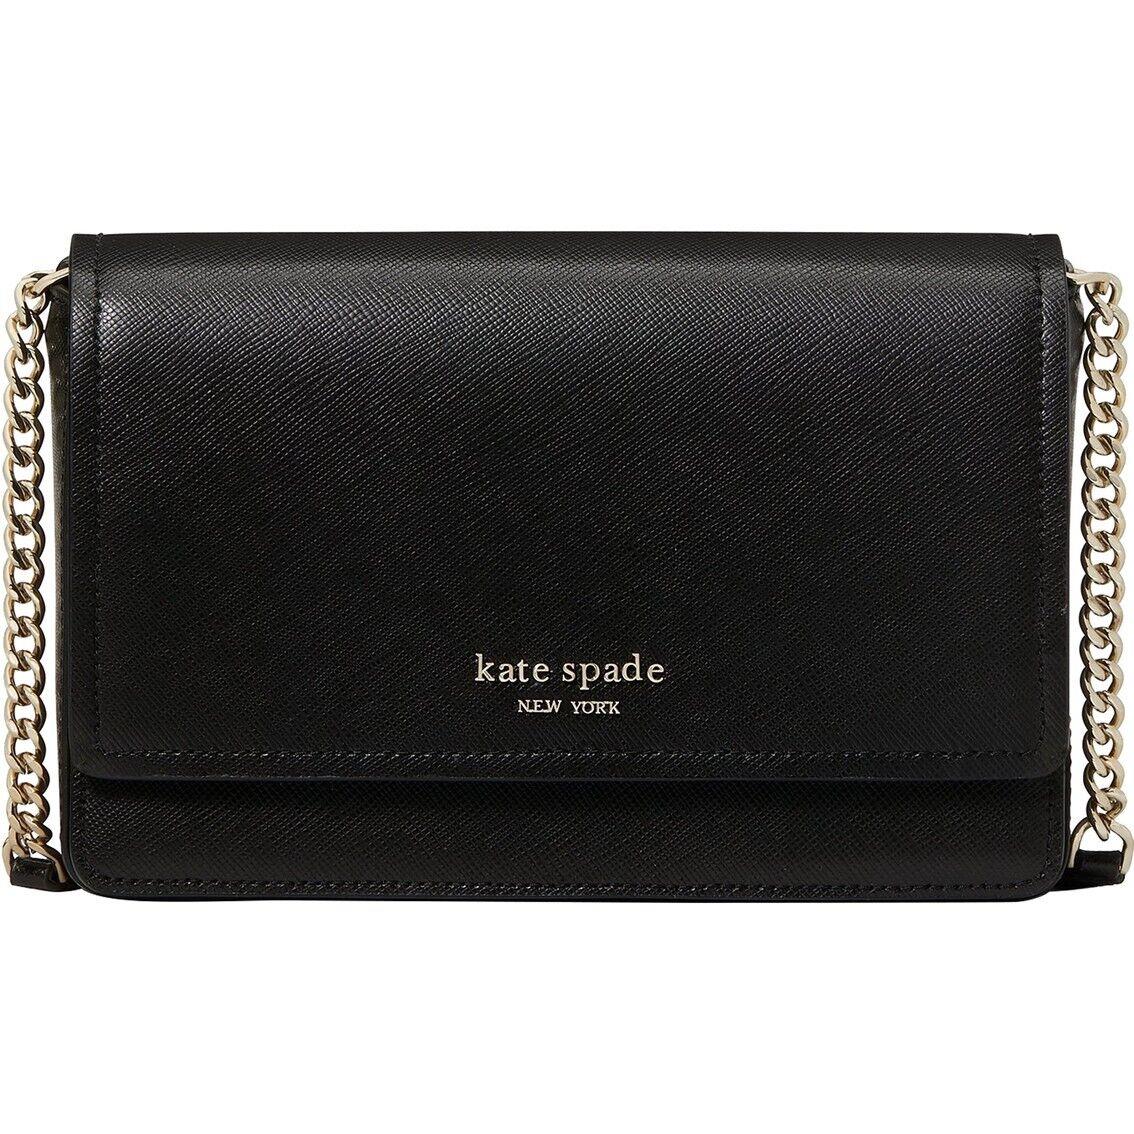 Kate Spade  bag   - Gold Handle/Strap, Gold Hardware, Black Exterior 1